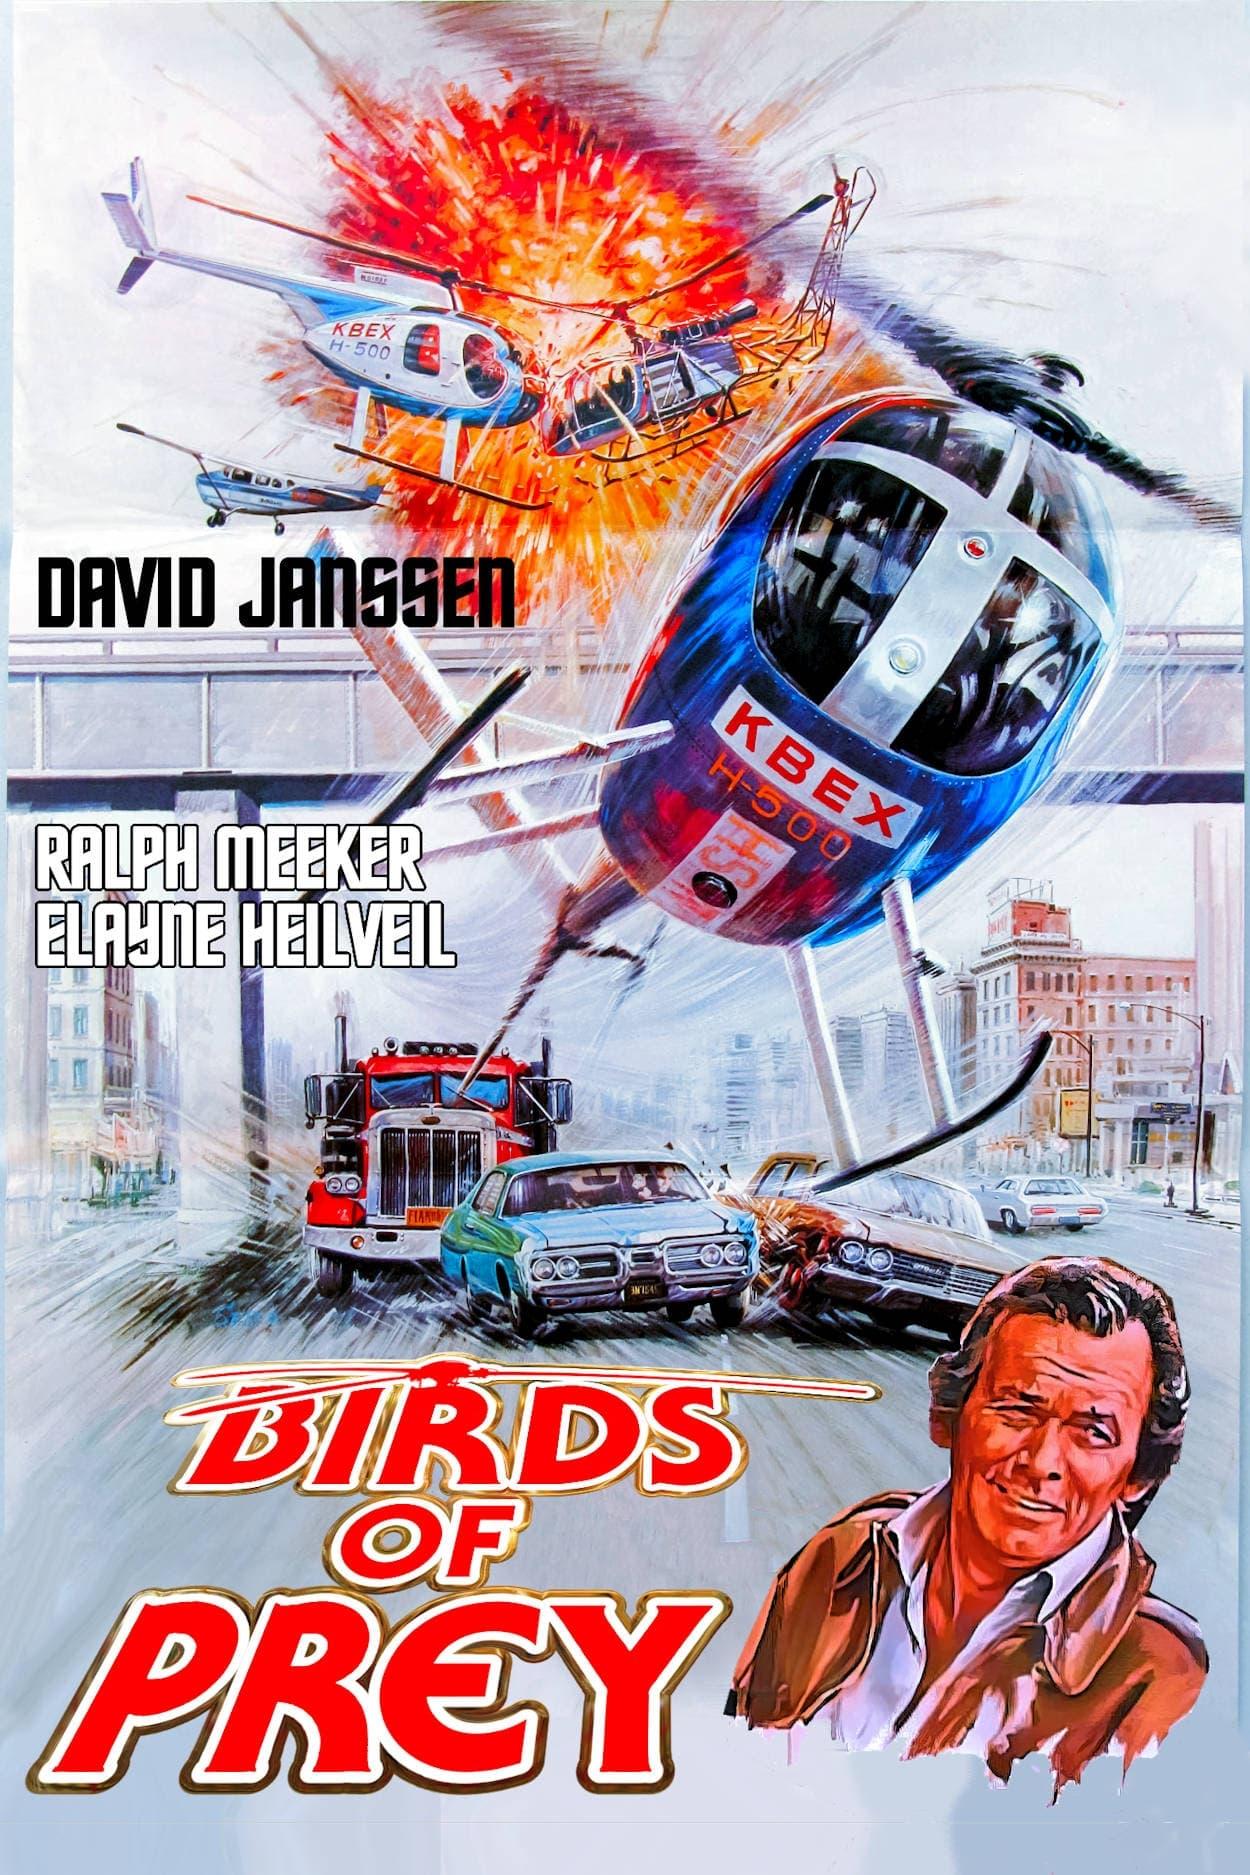 Birds of Prey poster